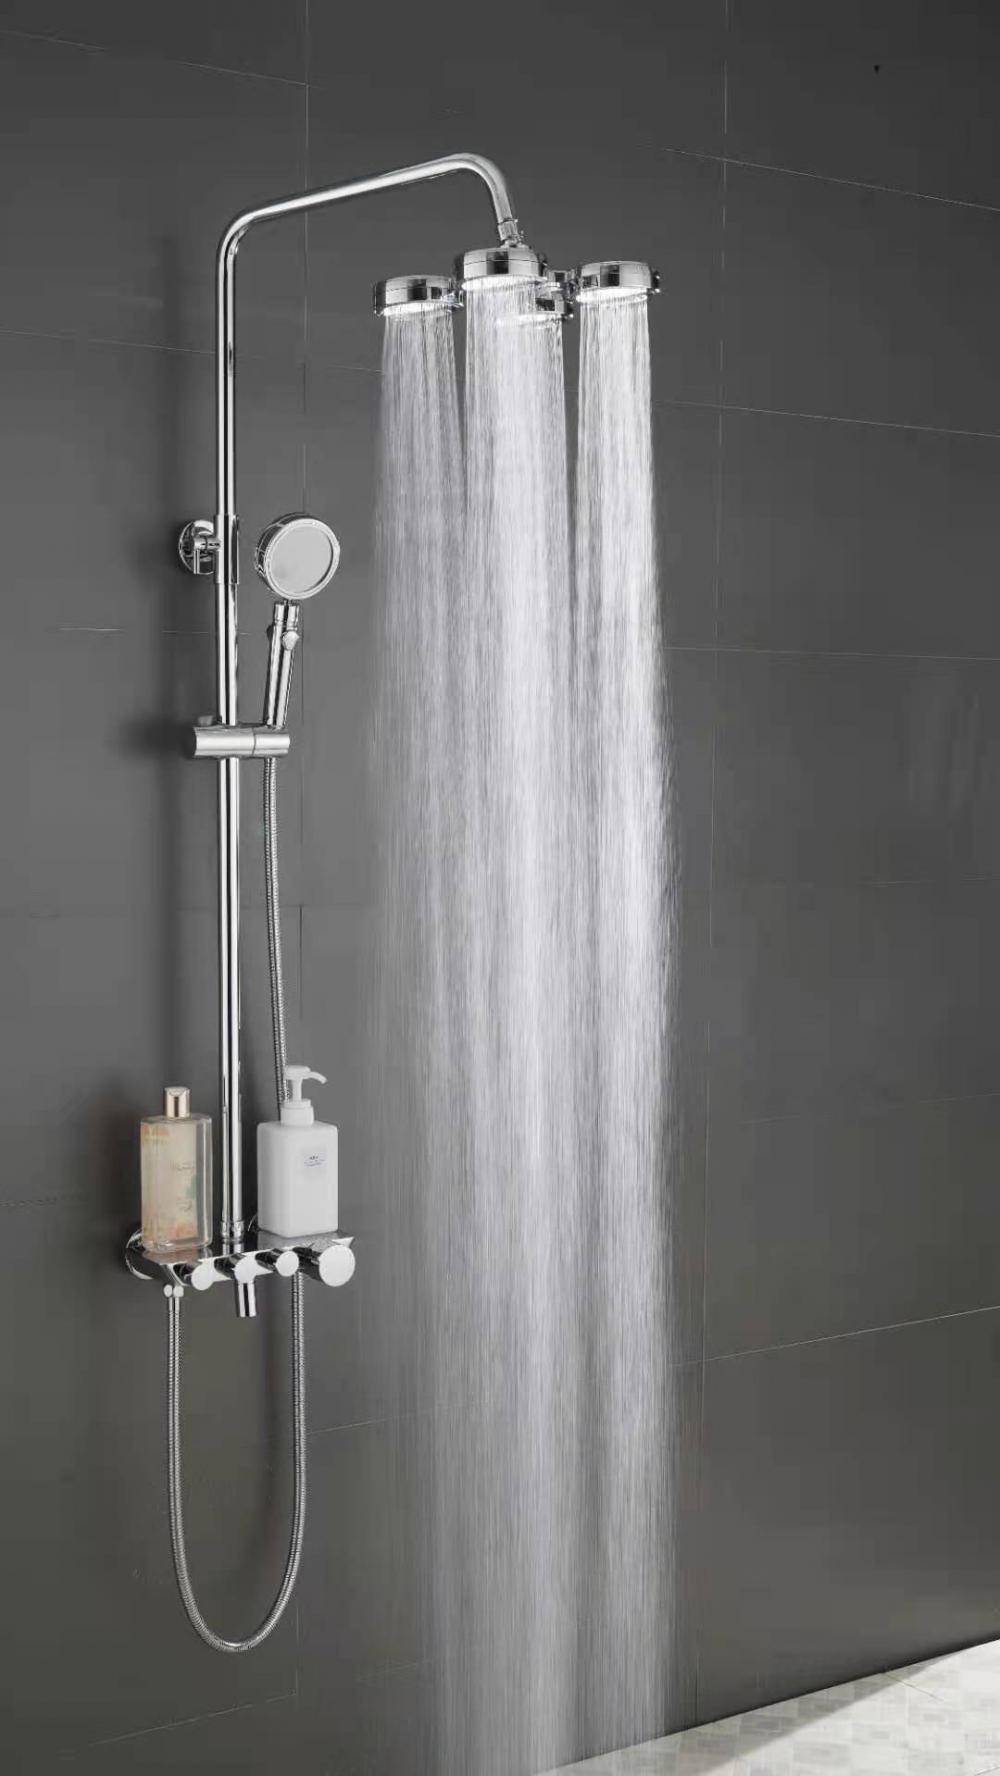 Yeni stil Komple set abs krom kaplama tavan ve duş başlığı yağış banyosu el durdurma düğmesi ile